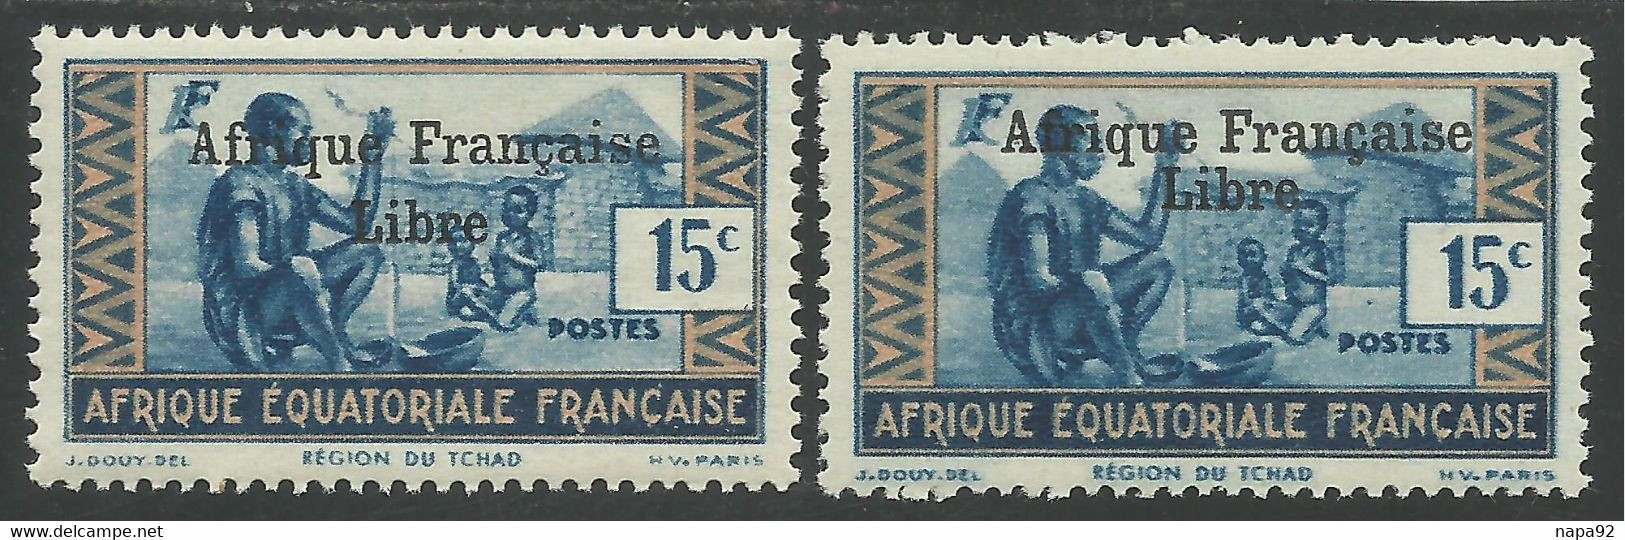 AFRIQUE EQUATORIALE FRANCAISE - AEF - A.E.F. - 1941 - YT 161** - 2ème TIRAGE - Ongebruikt